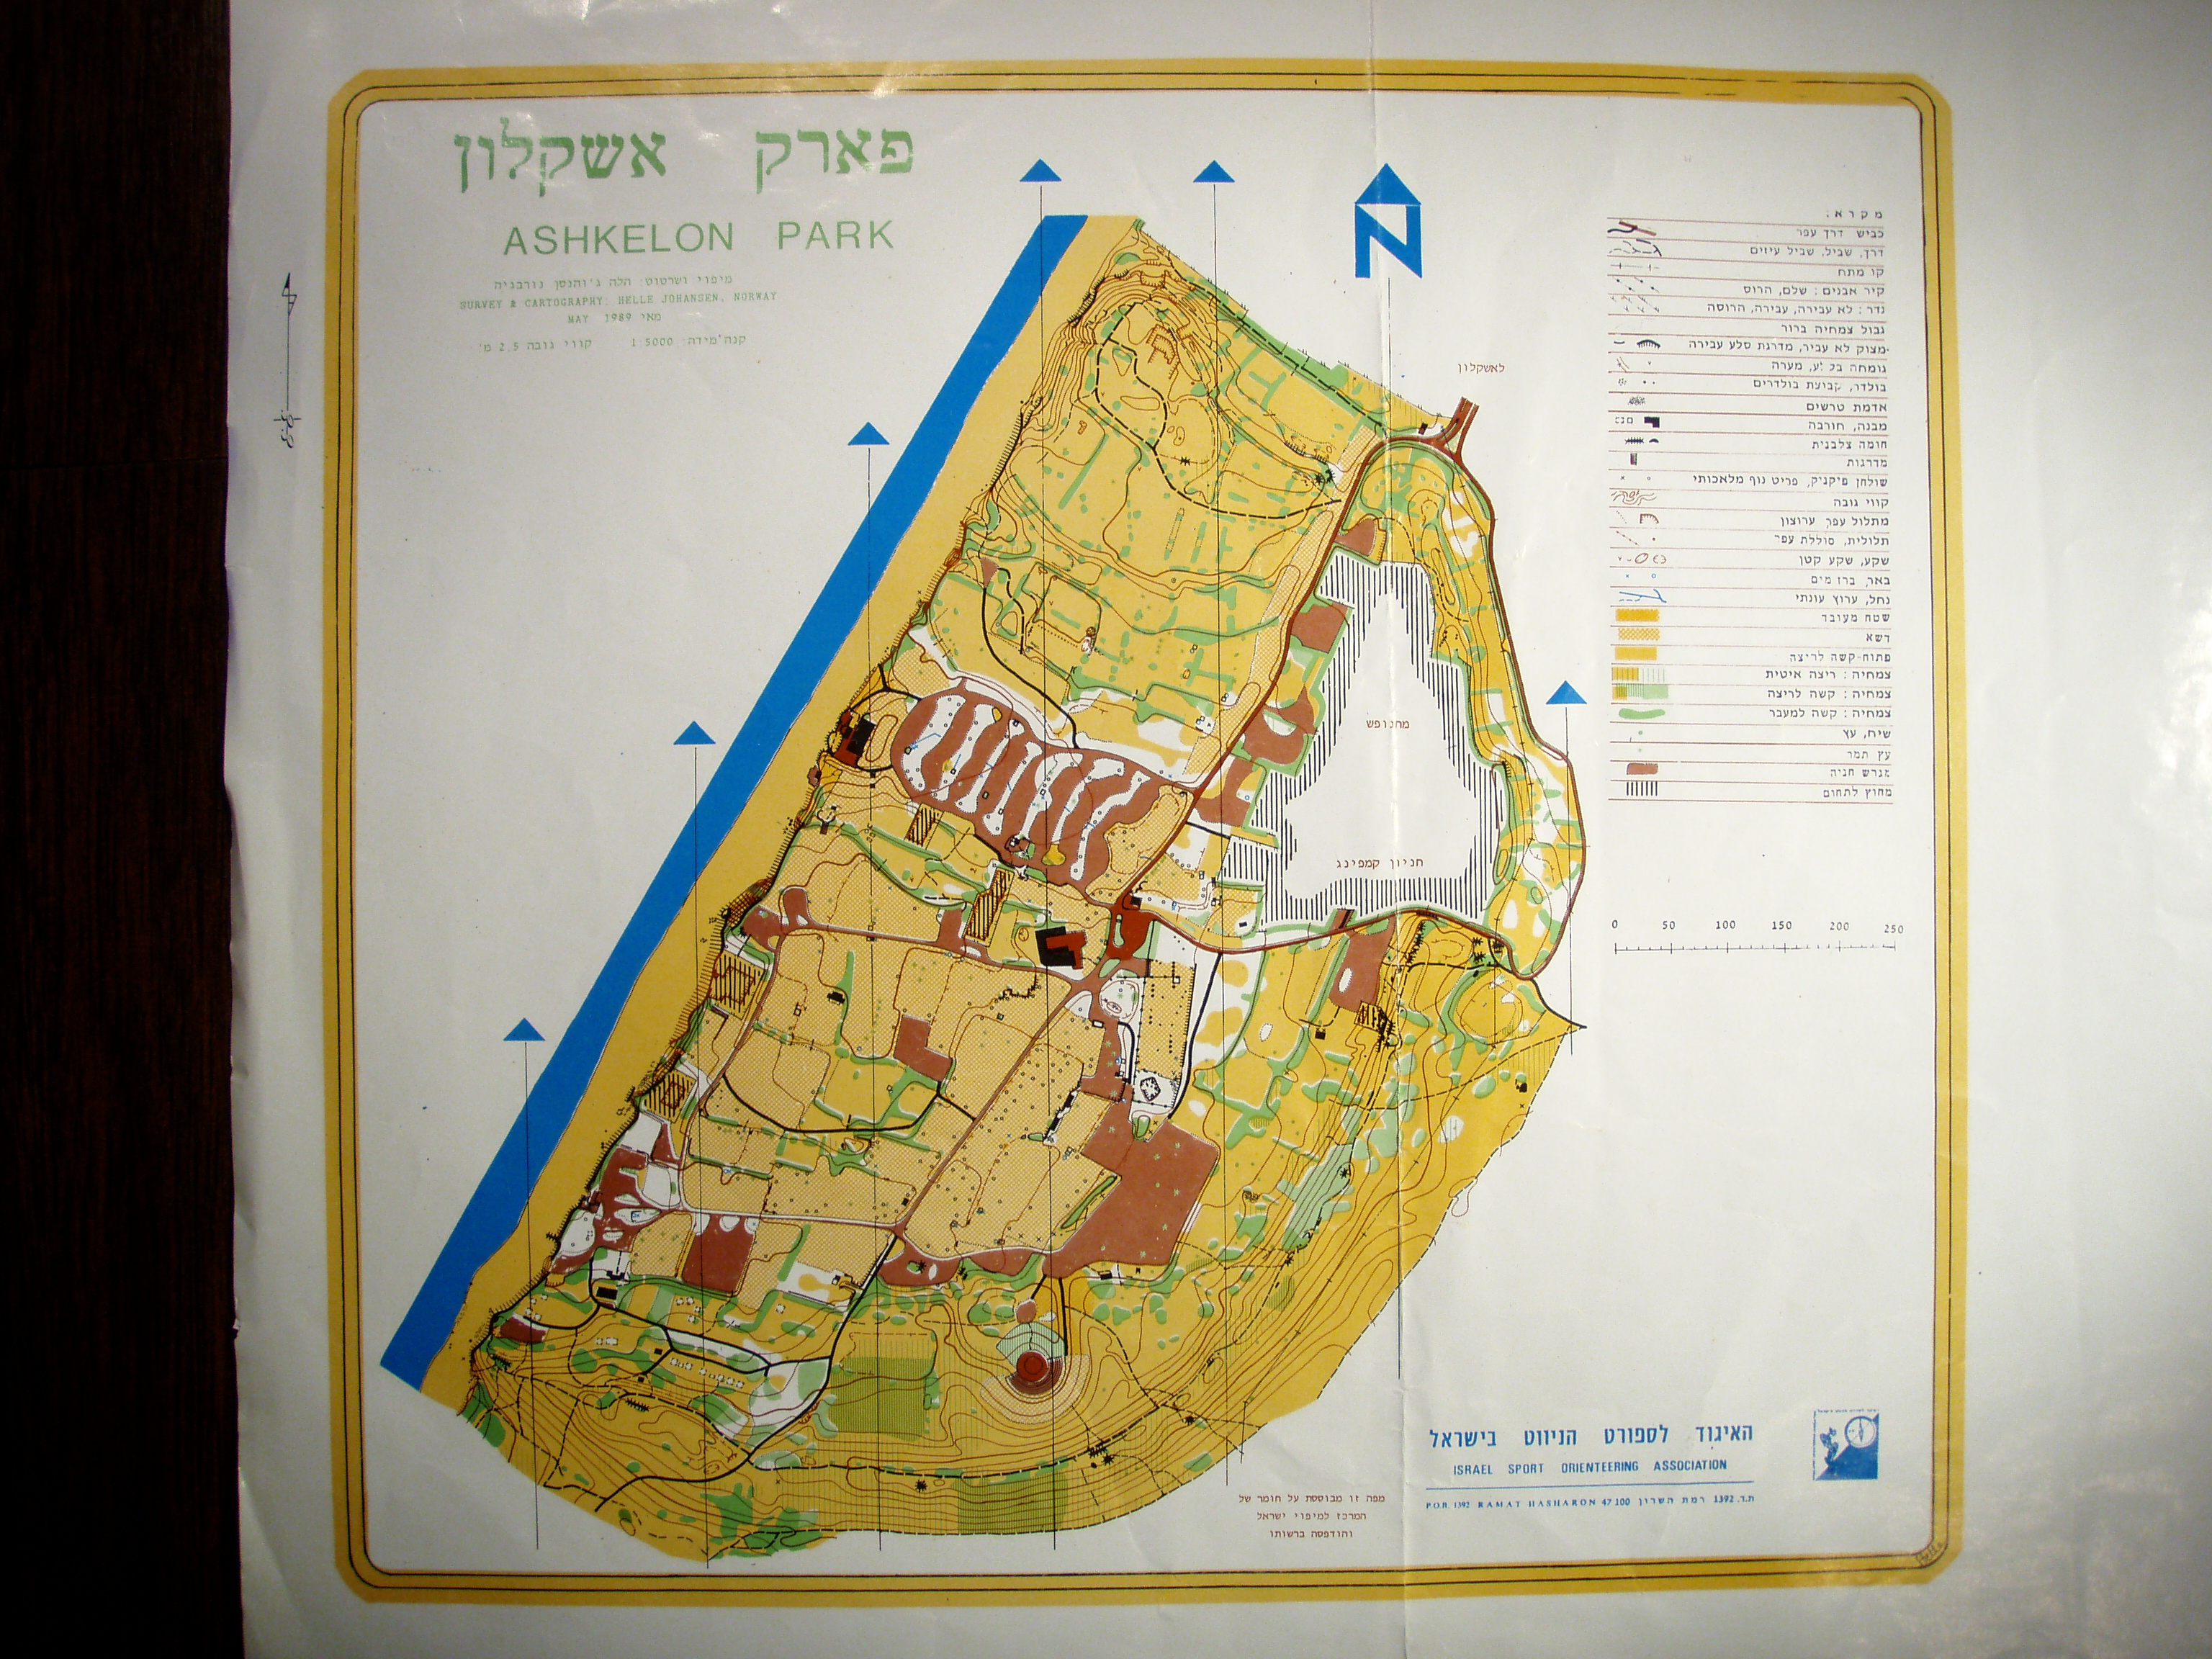 Ashkelon park (20.05.1989)